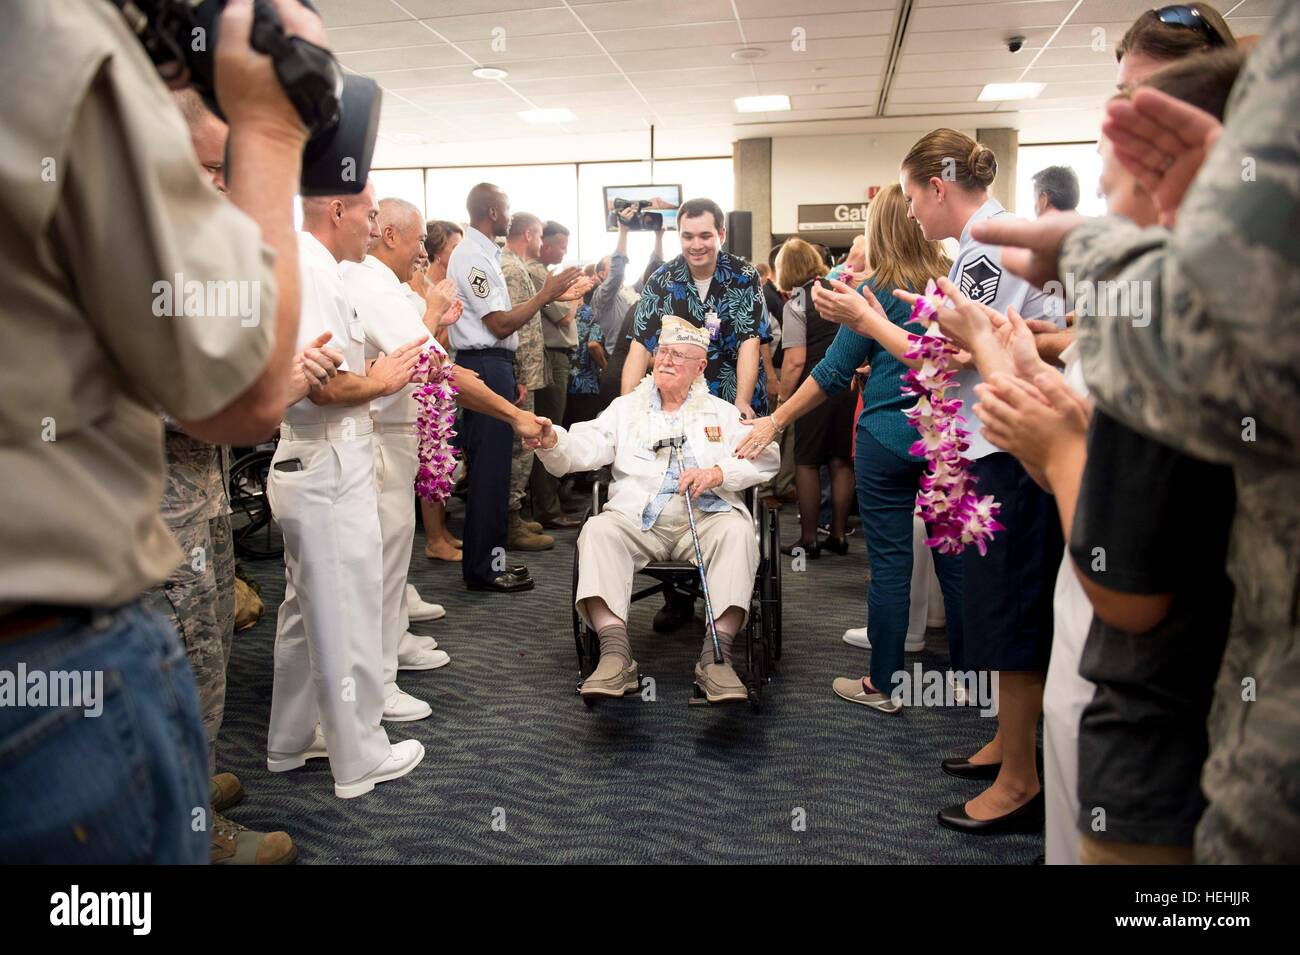 Eine Veteran des zweiten Weltkriegs Pearl Harbor USA wird von US-Soldaten mit floralen Leis begrüßt, nach der Ankunft am internationalen Flughafen Honolulu zur Teilnahme an Veranstaltungen zum Gedenken zu Ehren des 75-jährigen Bestehens des Pearl Harbor Angriffen 3. Dezember 2016 in Honolulu, Hawaii. Stockfoto